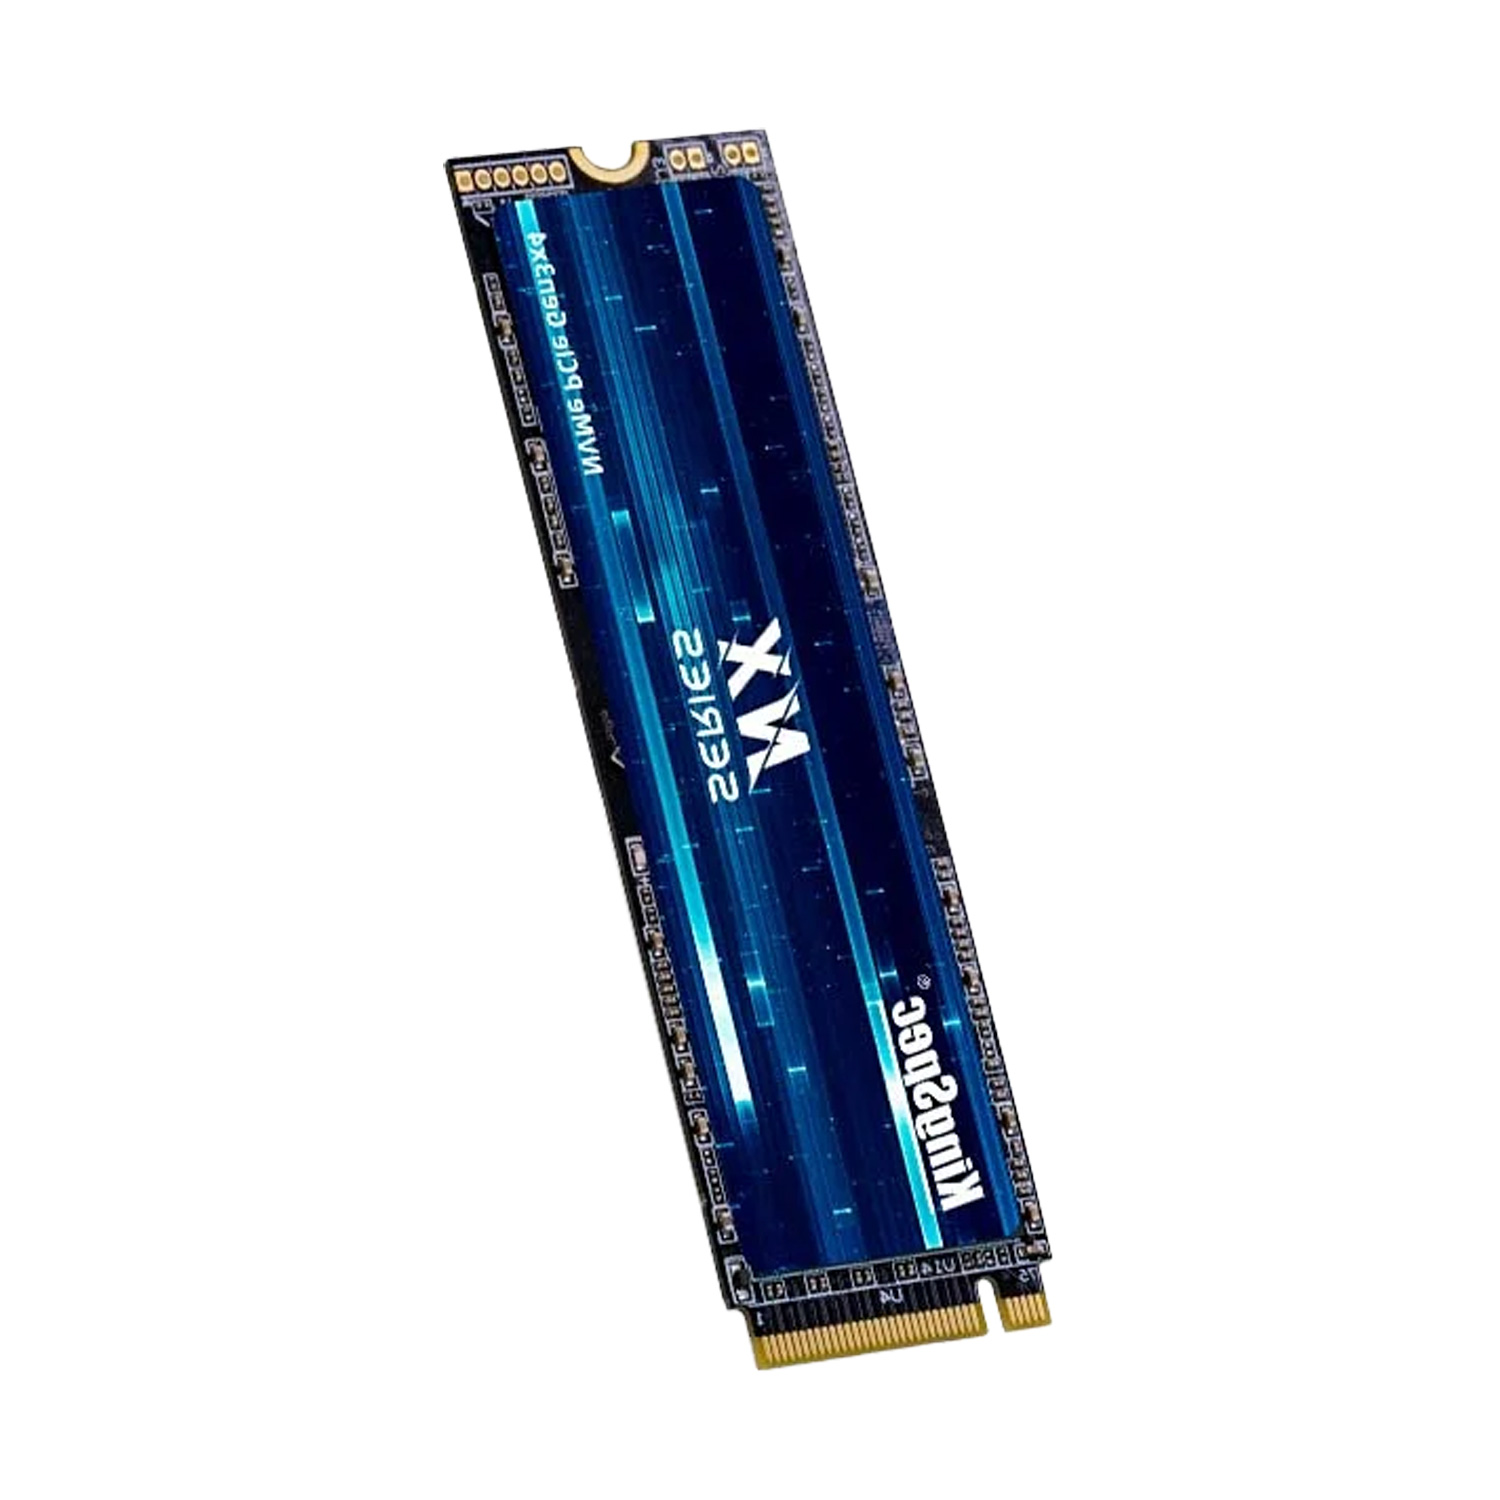 SSD M.2 Kingspec NX-128 128GB NVME